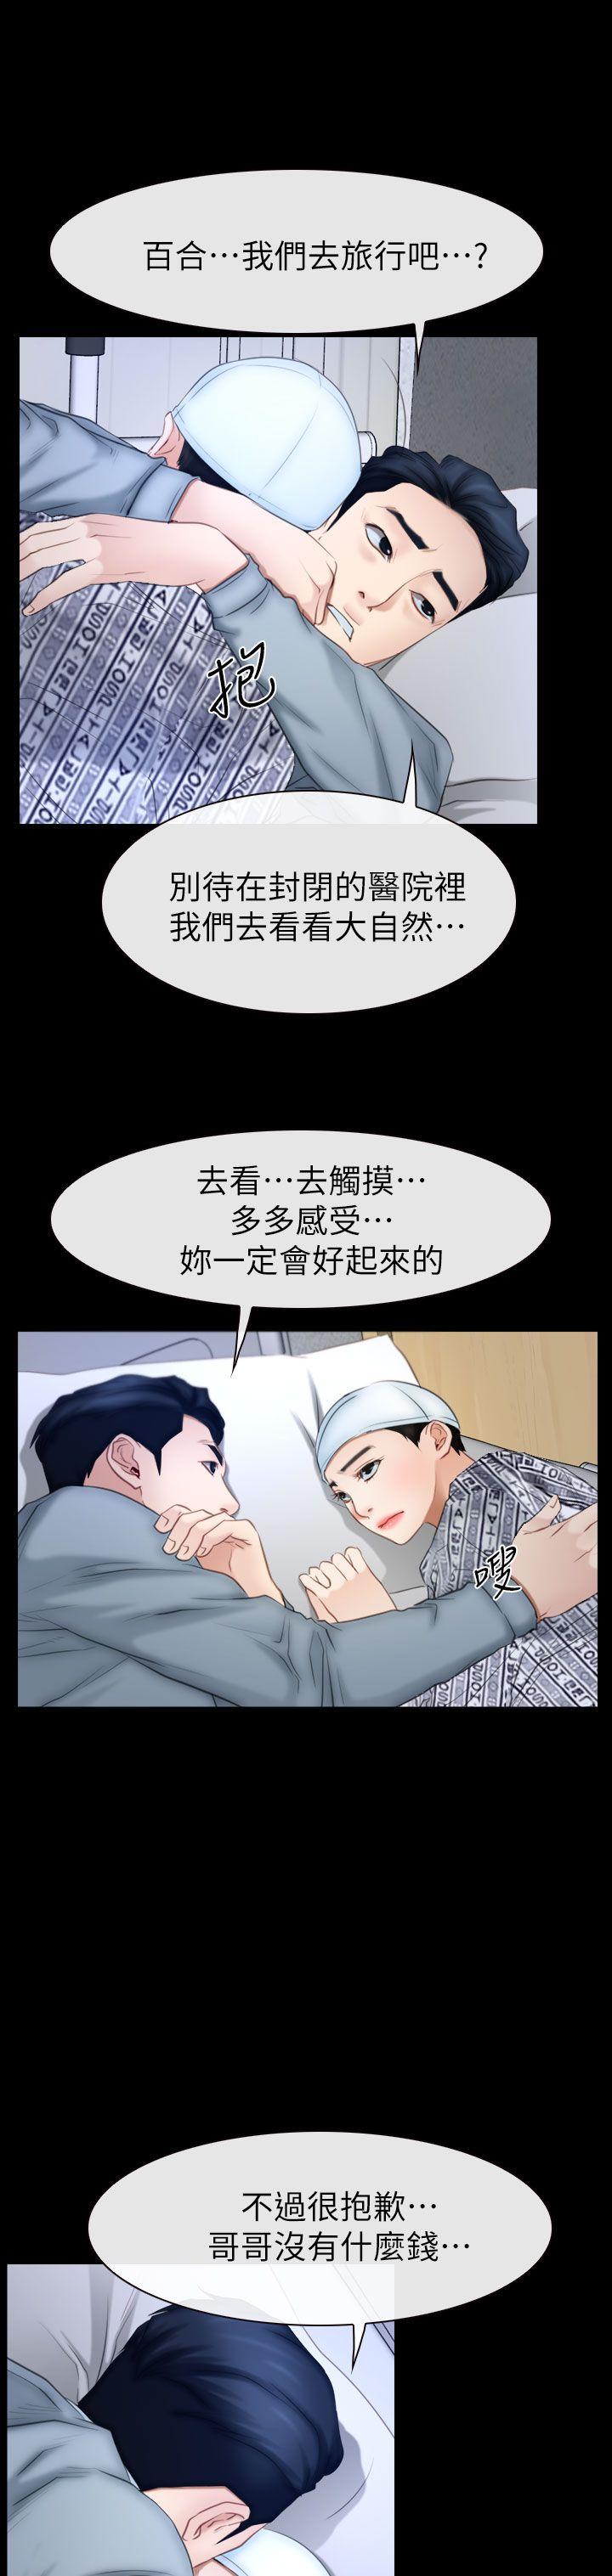 韩国污漫画 猜不透的心 最终话 3